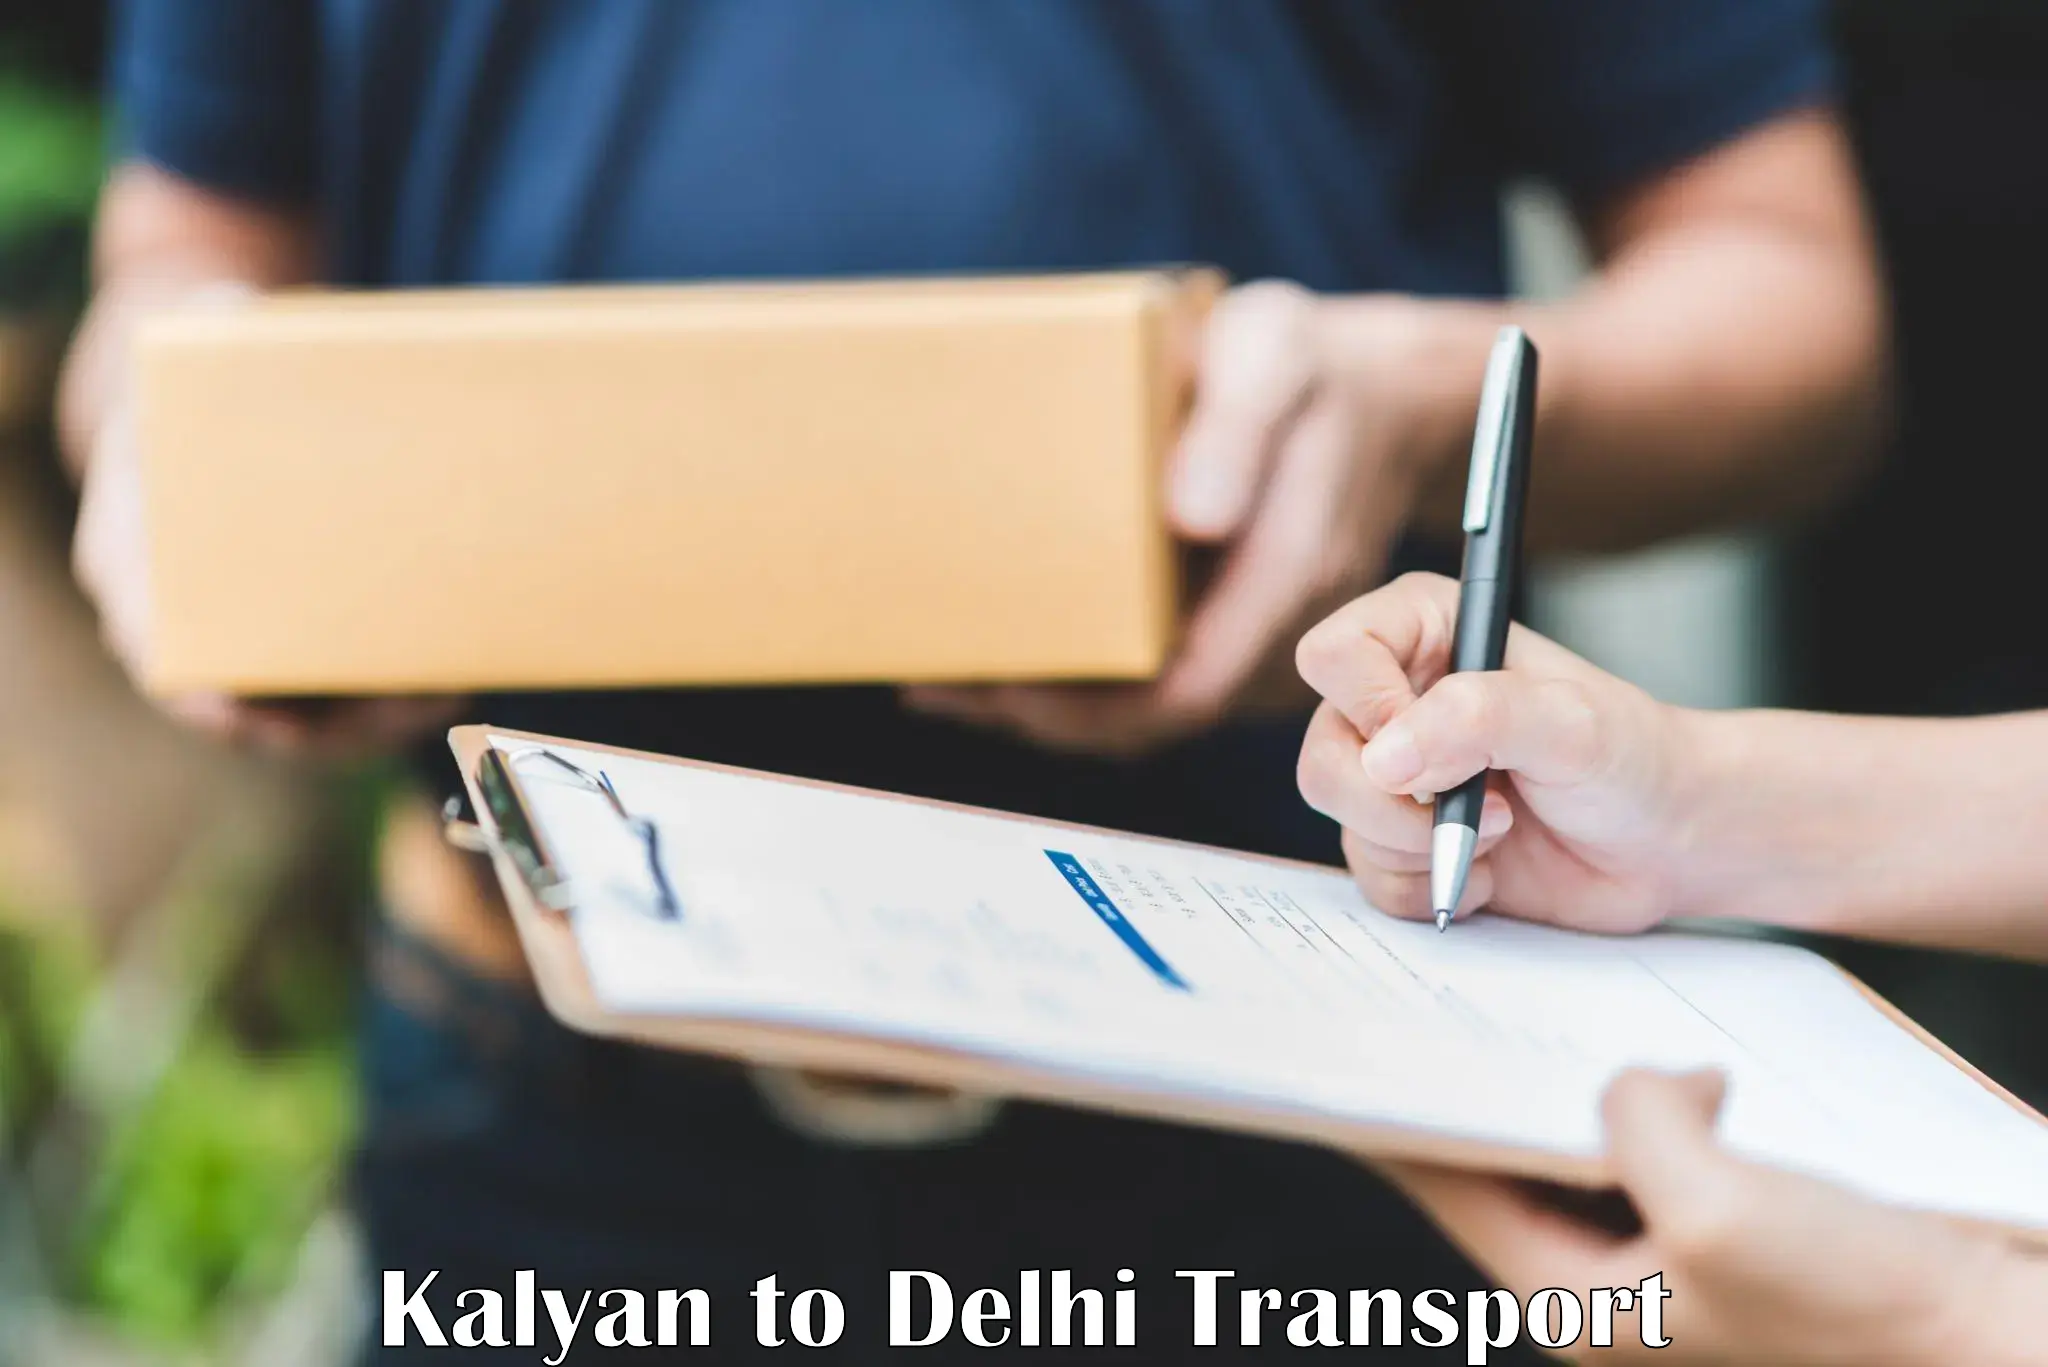 Express transport services Kalyan to NCR